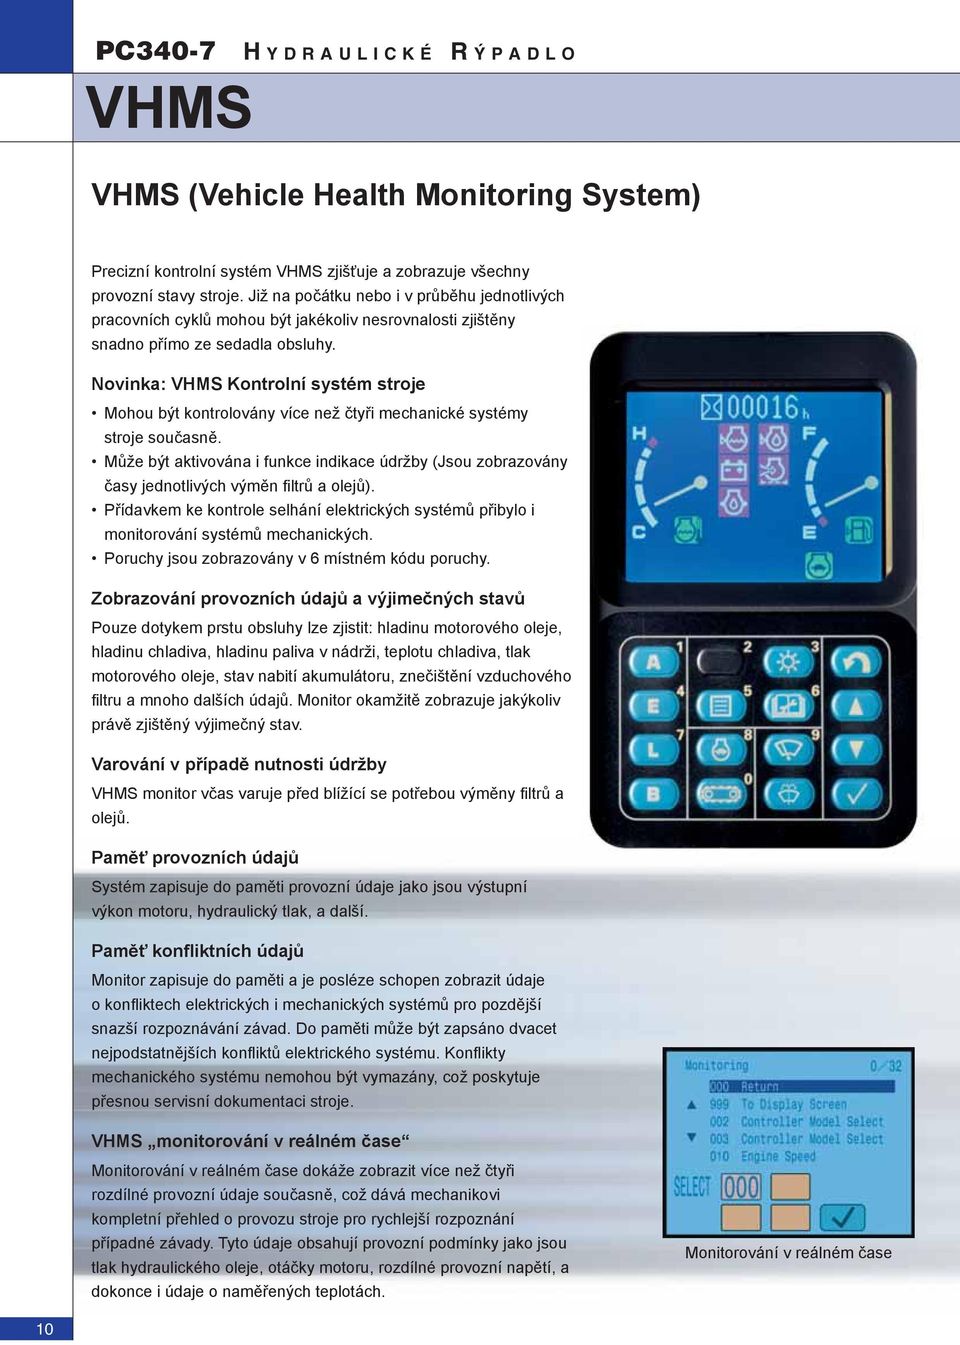 Novinka: VHMS Kontrolní systém stroje Mohou být kontrolovány více než čtyři mechanické systémy stroje současně.